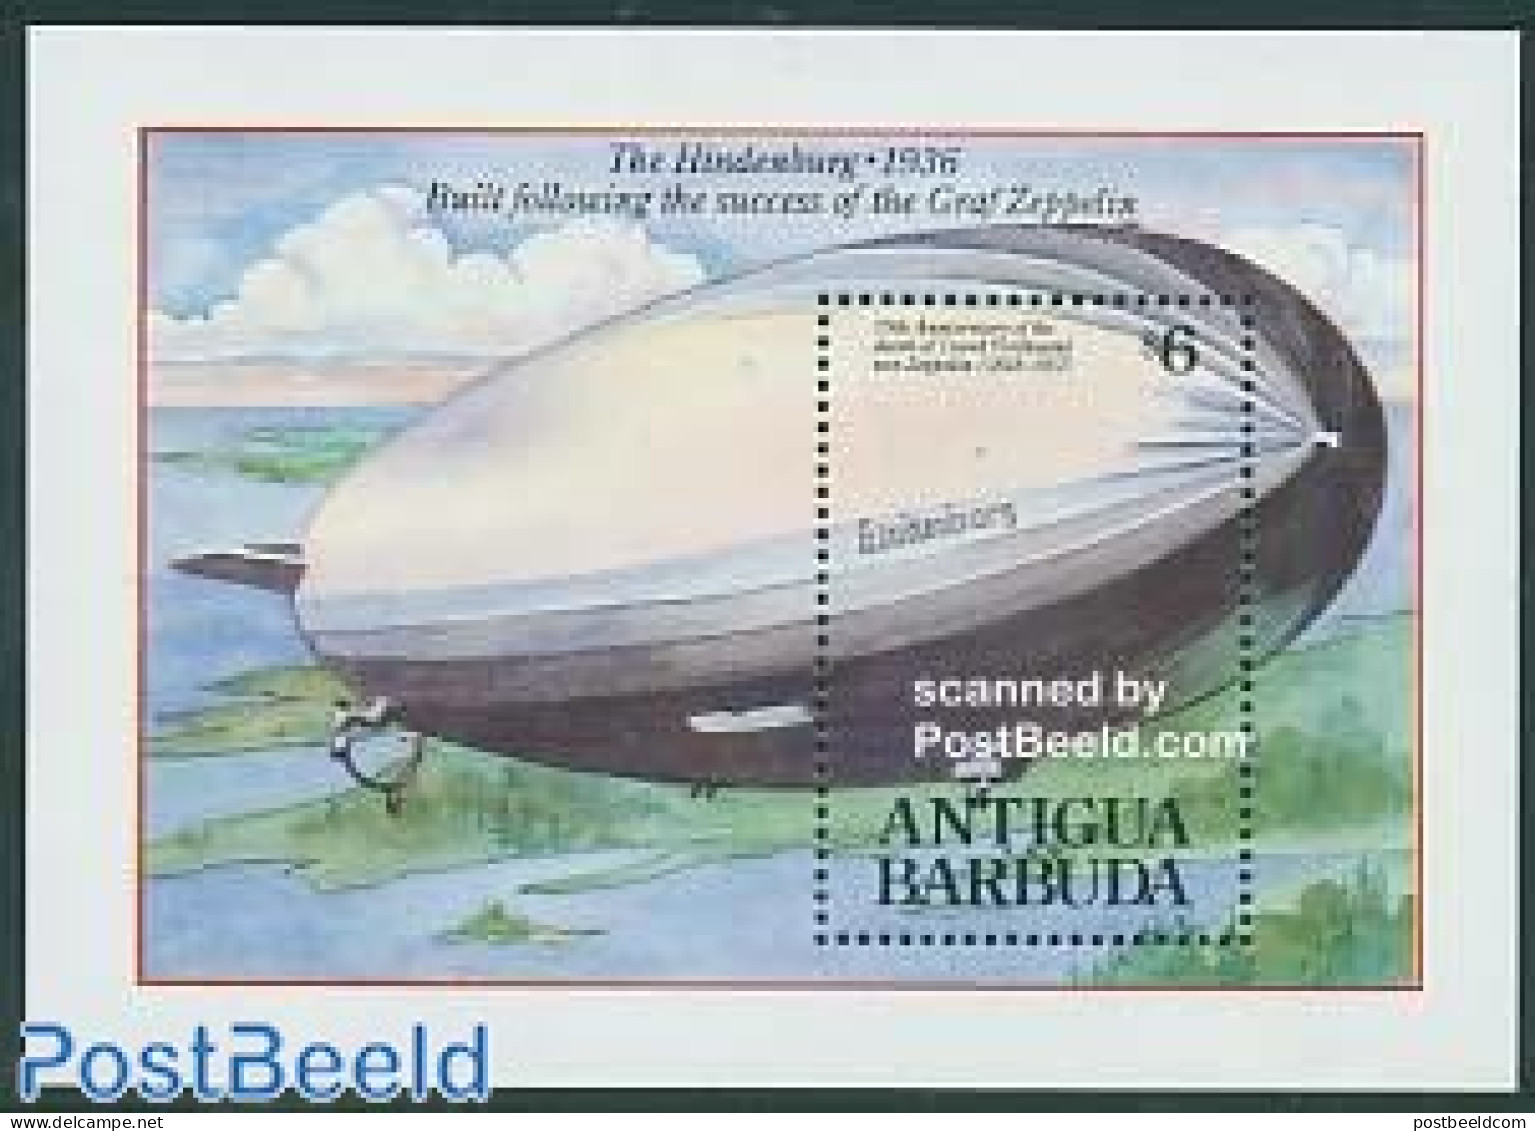 Antigua & Barbuda 1992 Zeppelin S/s, Mint NH, Transport - Zeppelins - Zeppelins